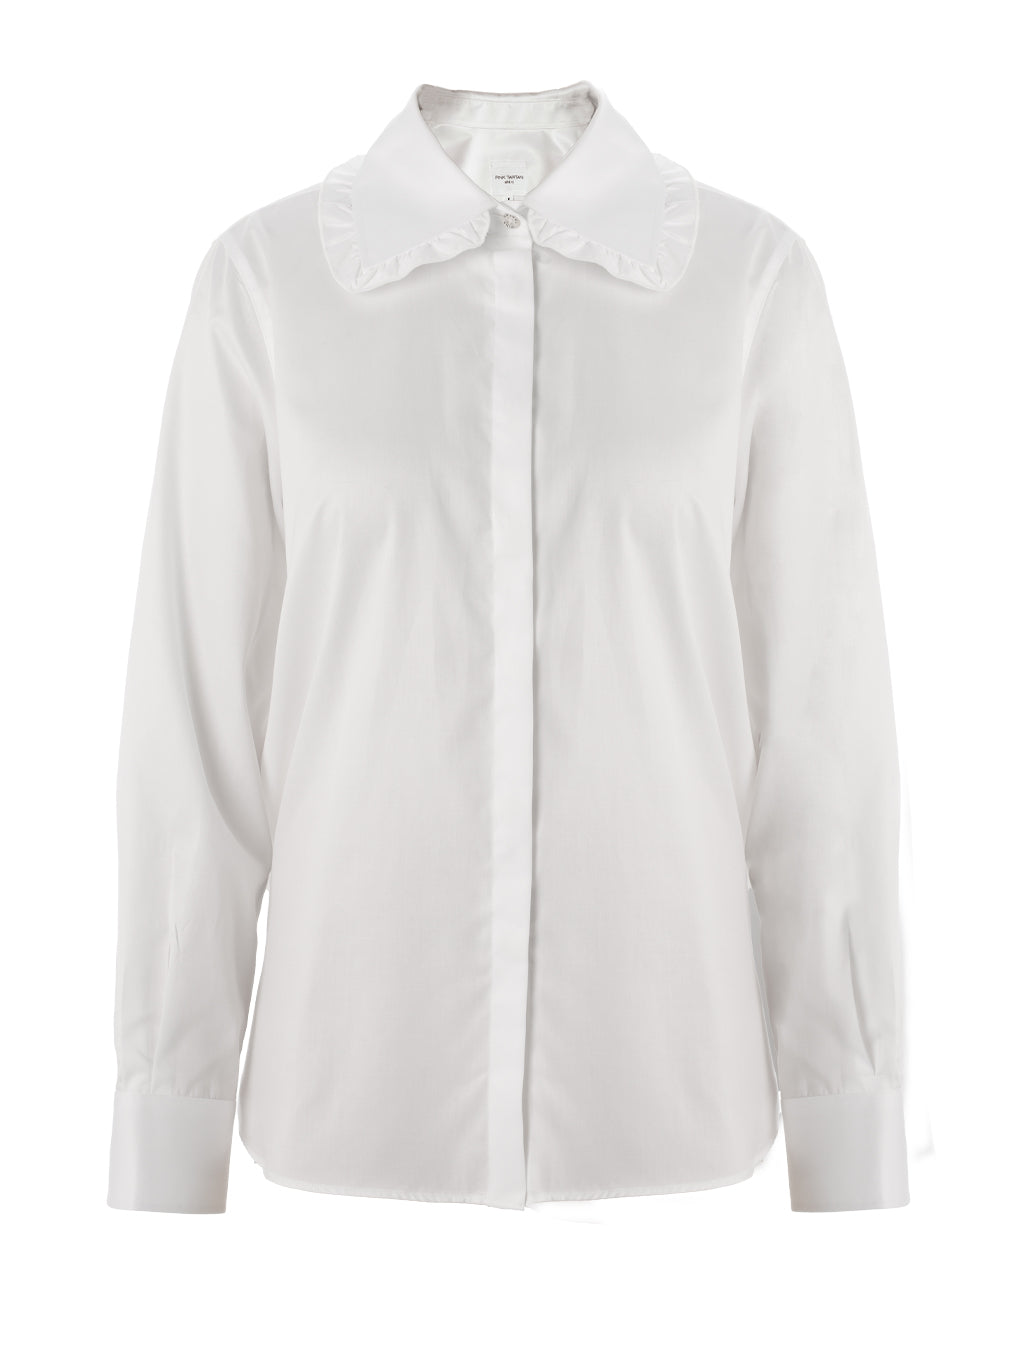 Ruffle Collar Shirt - White